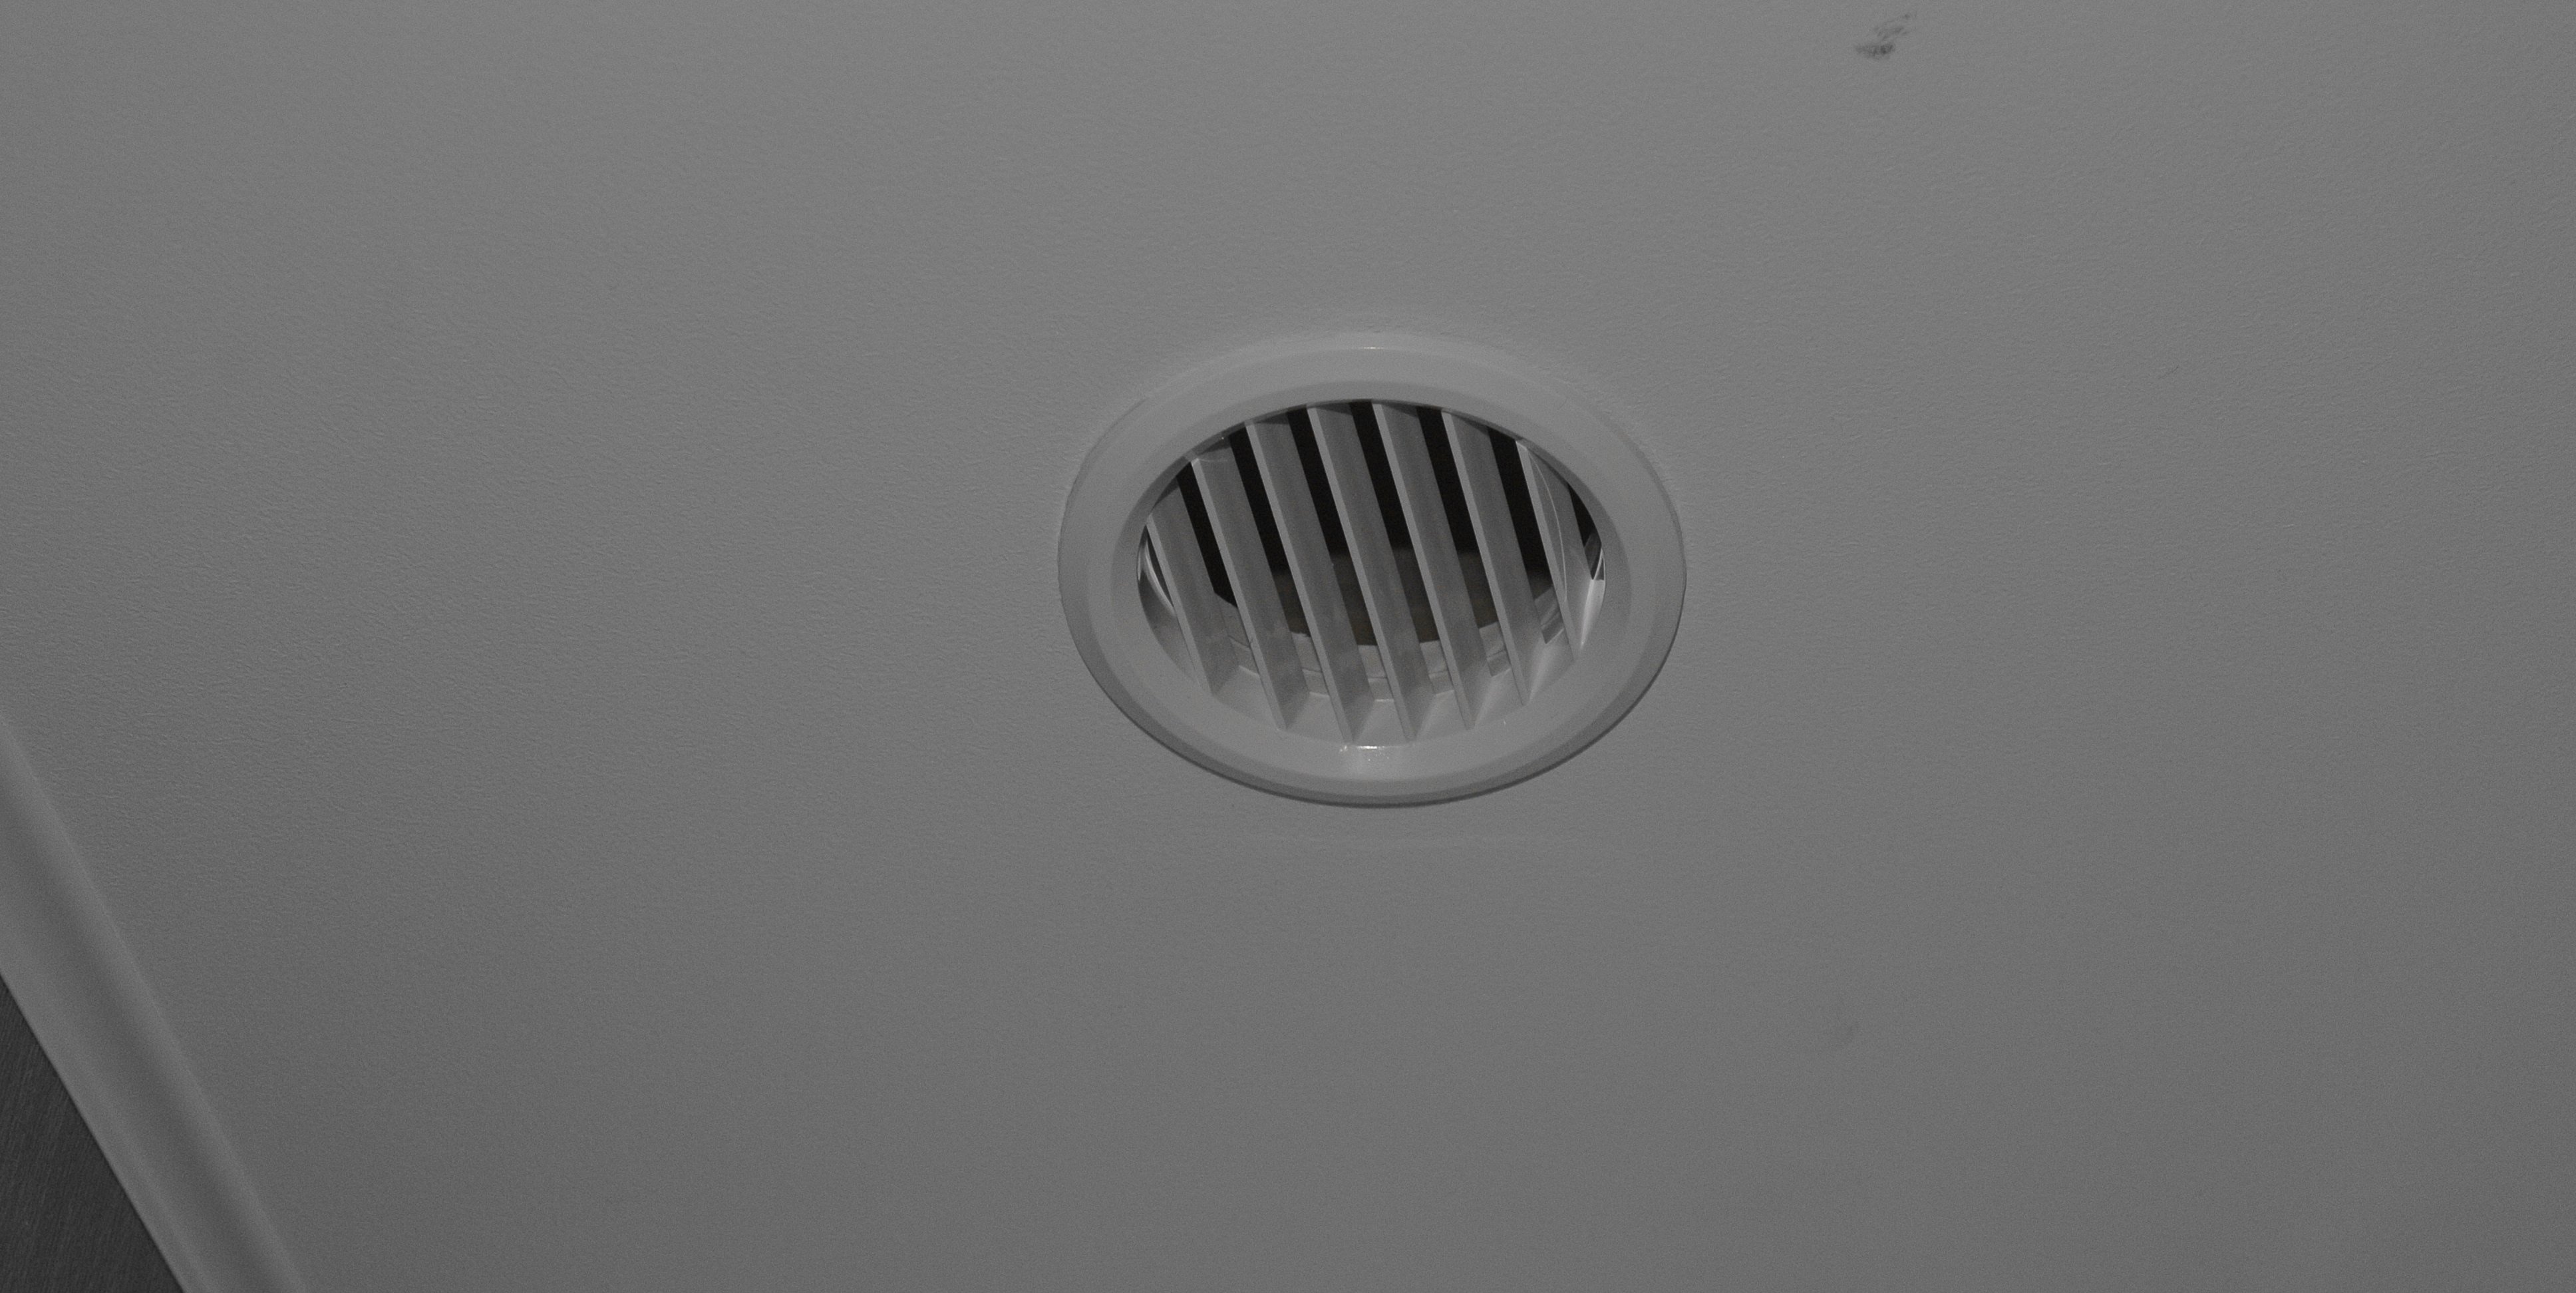 Вентиляция натяжной в ванне. Вентиляционная решетка для натяжного потолка 80 мм. Вытяжной вентилятор 80мм для ванной комнаты под натяжной потолок. Вытяжной диффузор ve125. Вент спс вентиляционные решетки.